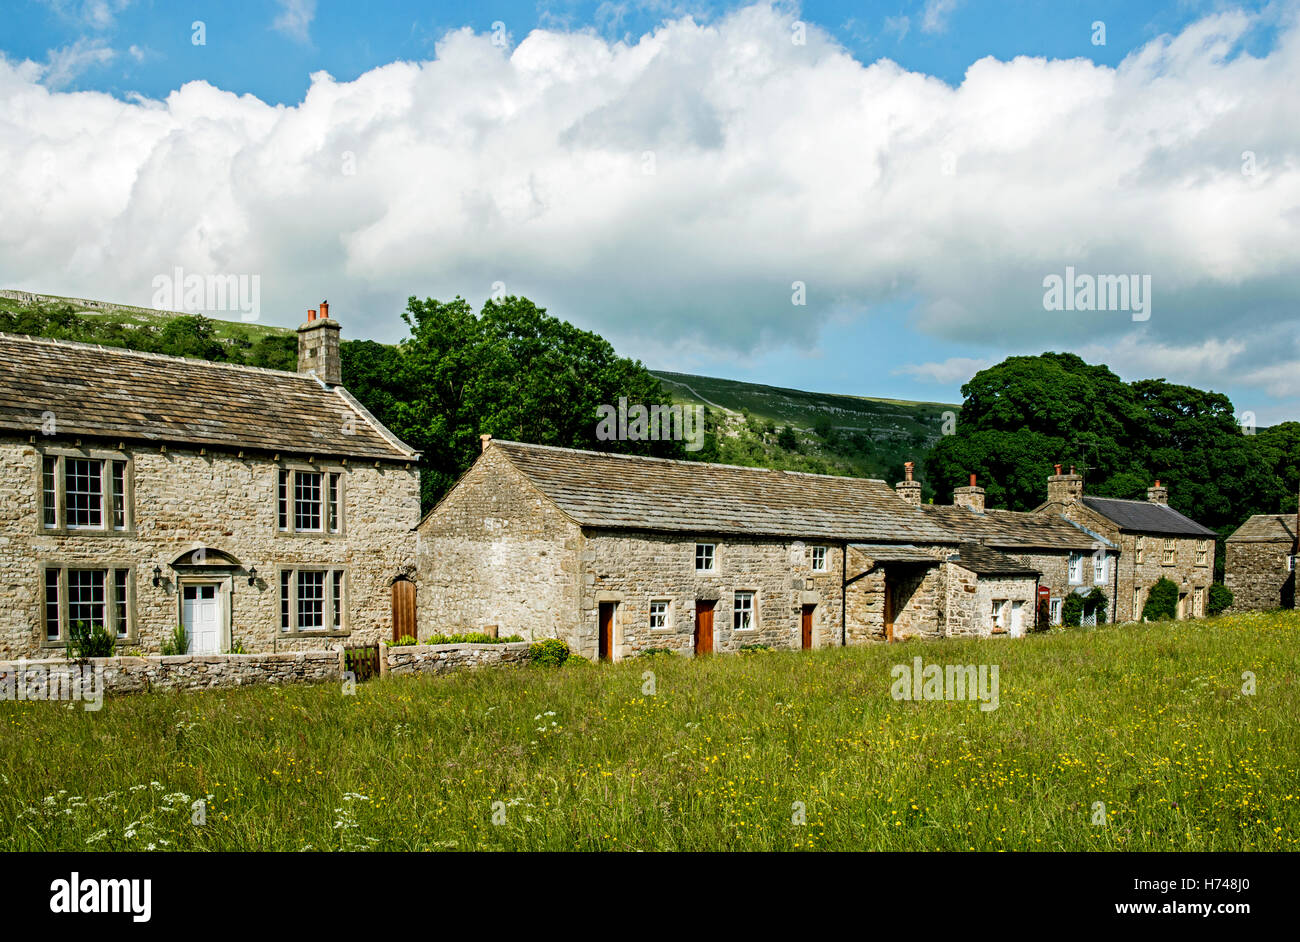 Dorf von Arnecliff in Littondale Yorkshire Dales im Sommer, zeigen eine Reihe von Stein erbauten Häuser entlang der grünen. Stockfoto